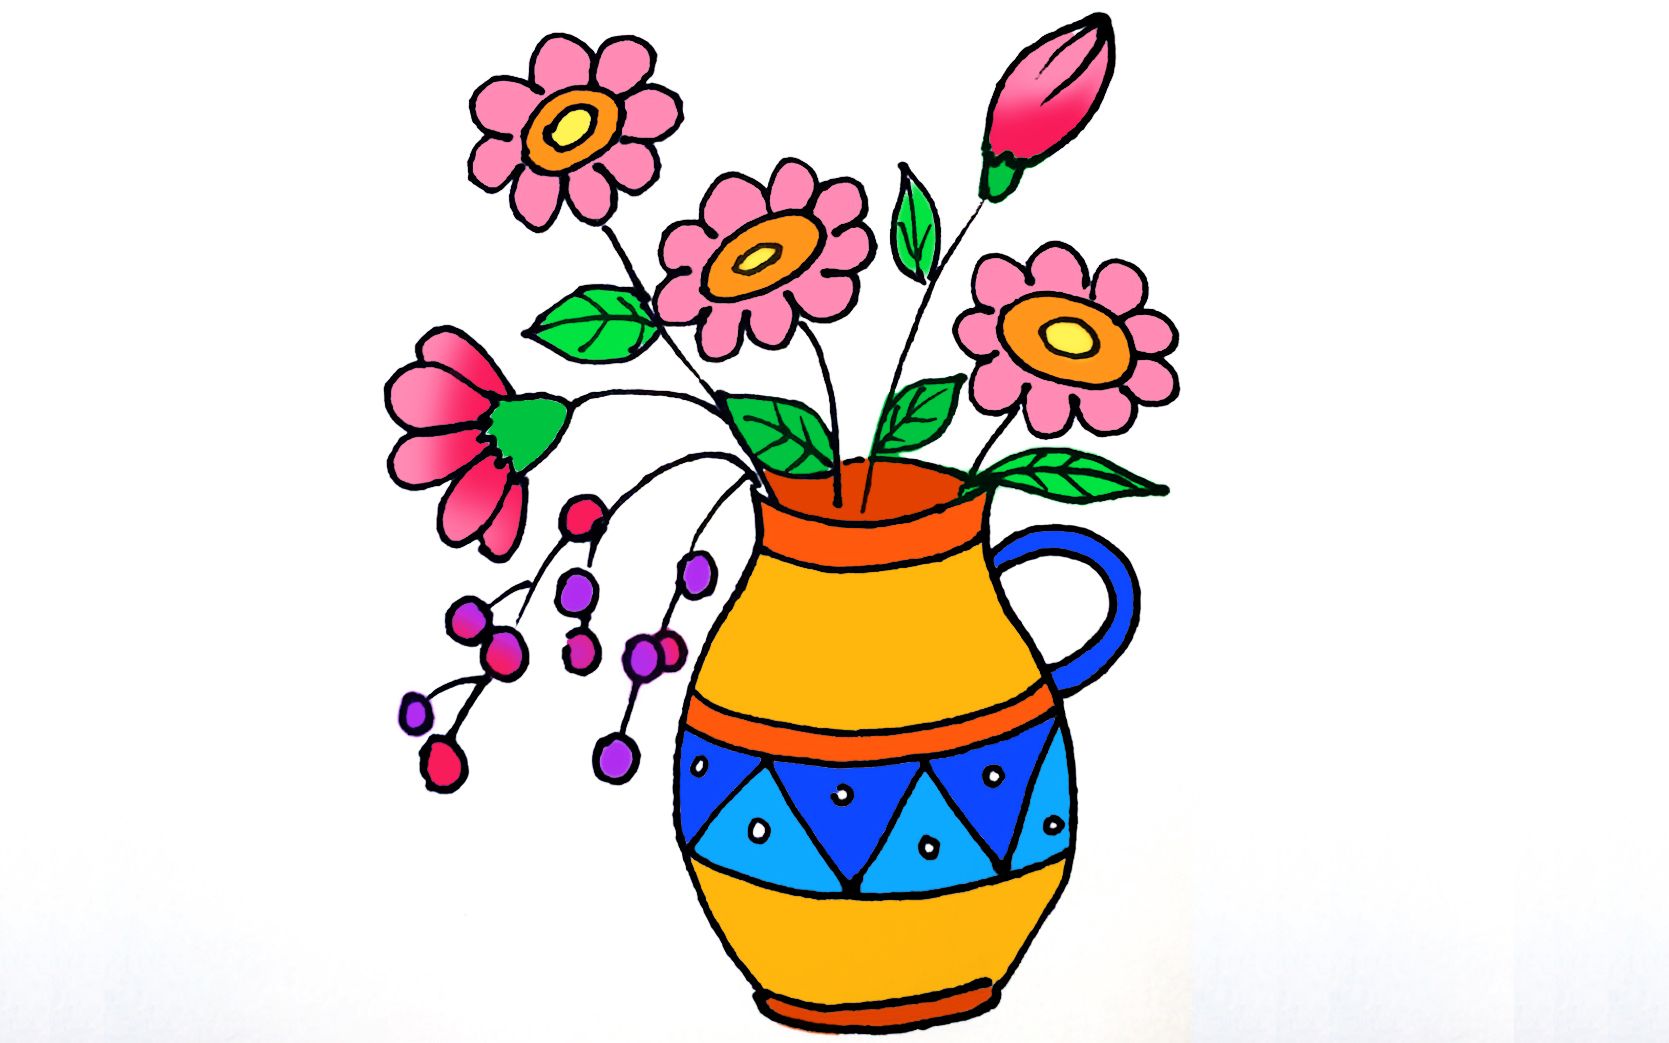 墨西哥陶瓷花瓶手绘线条插画元素 - 模板 - Canva可画